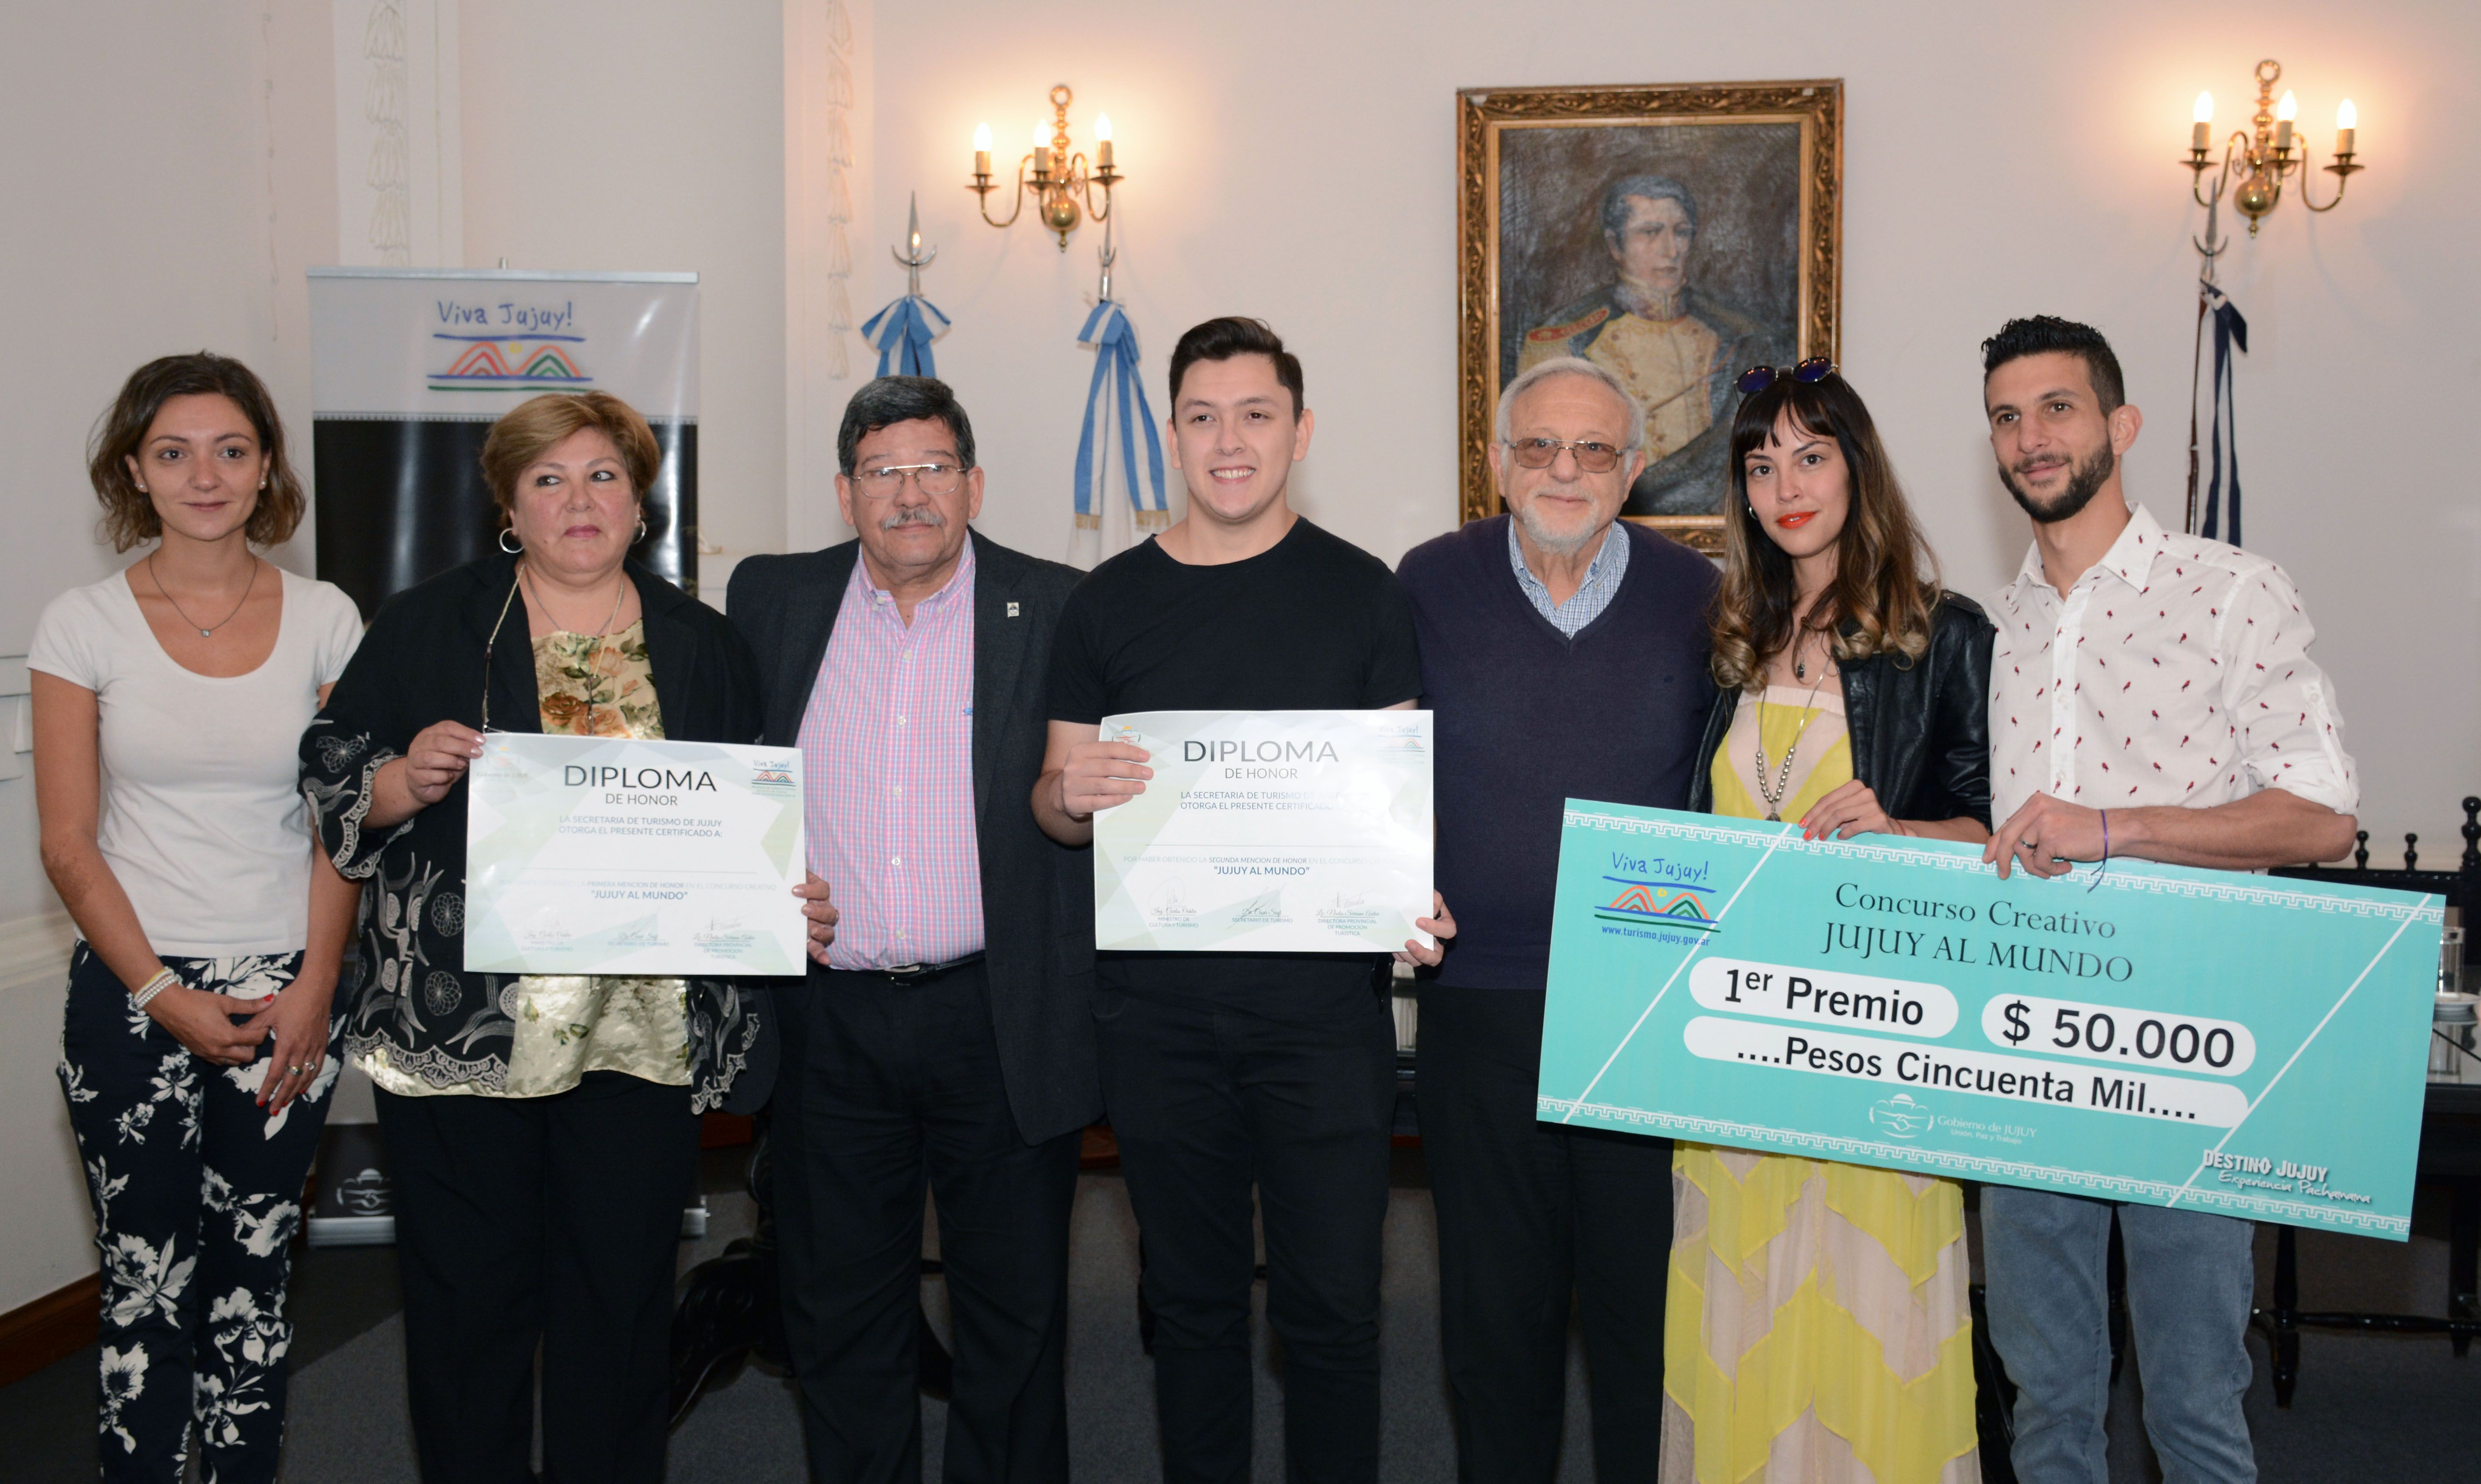 Funcionarios del ministerio de cultura y turismo entregaron premio y reconocimiento a los ganadores del concurso Jujuy Al Mundo